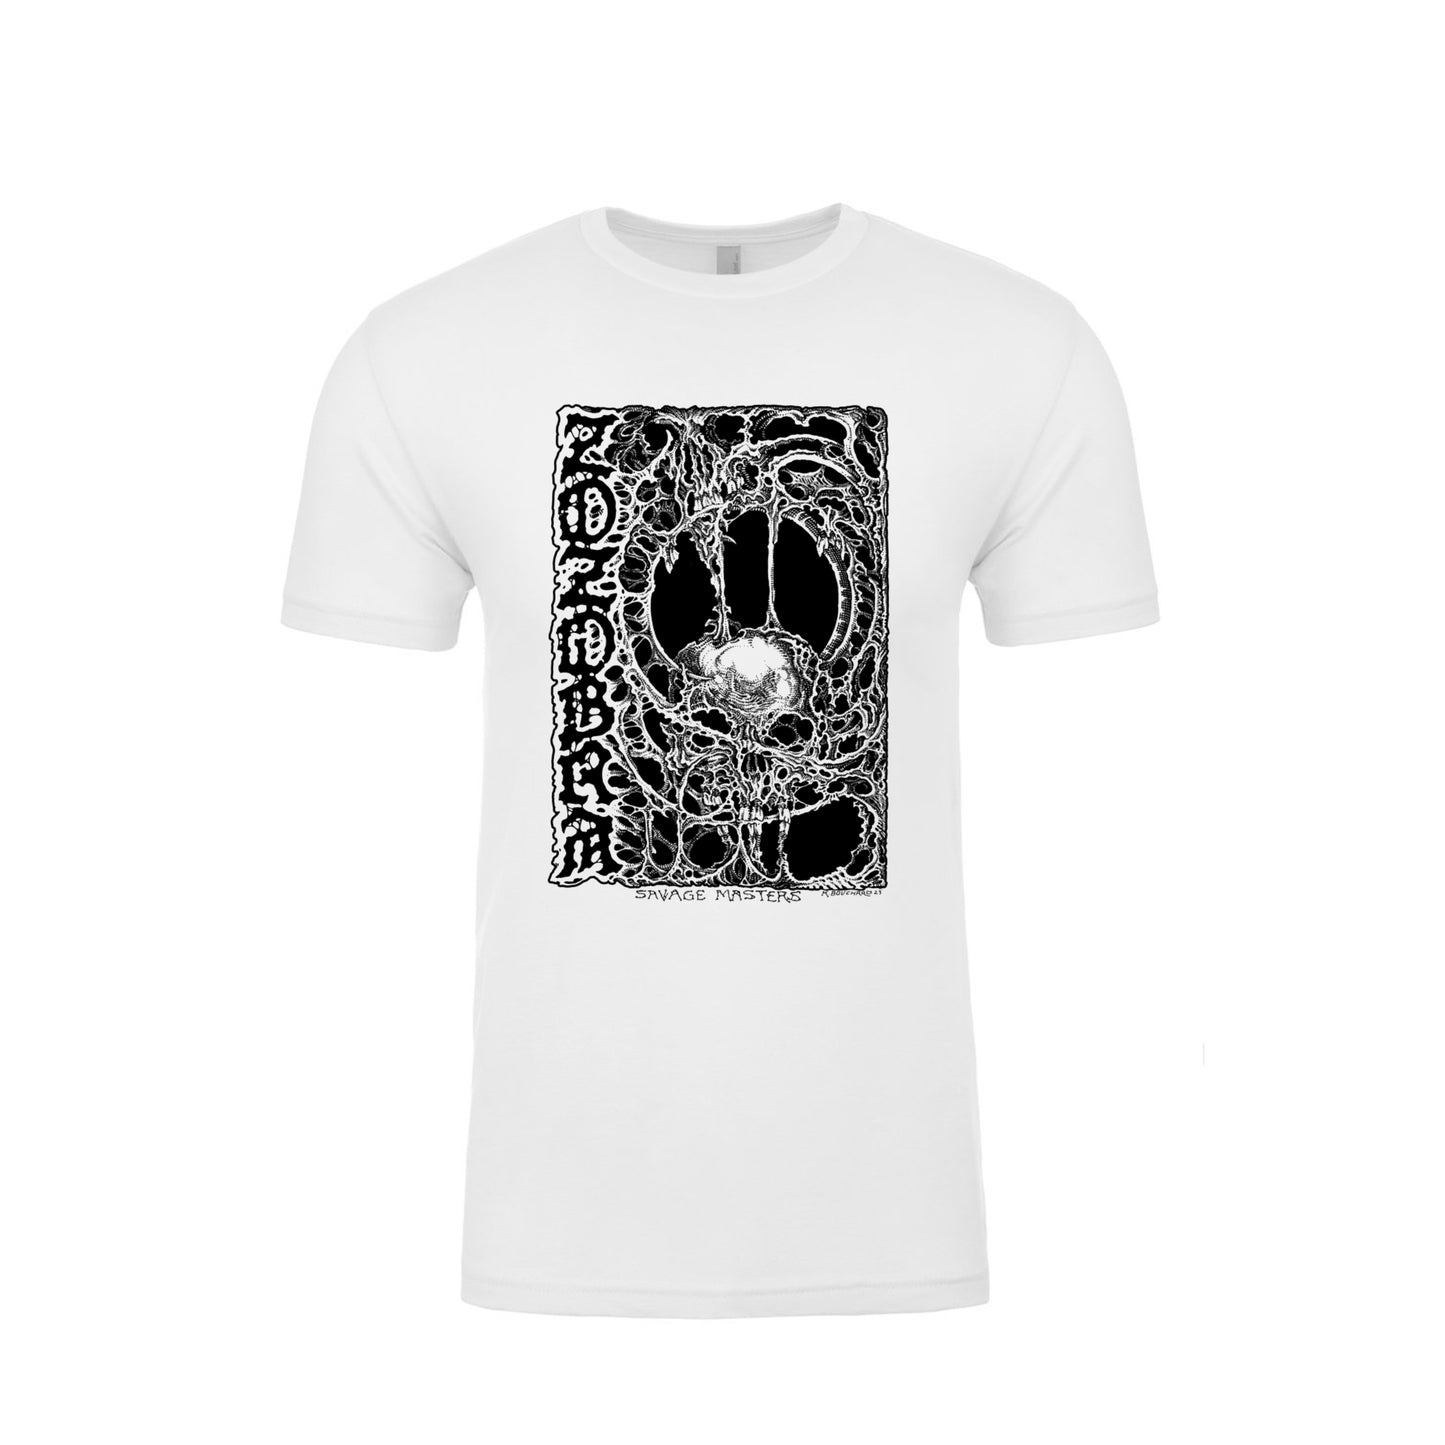 ZOZOBRA - Savage Masters - 10th Anniversary - White Skull T-Shirt